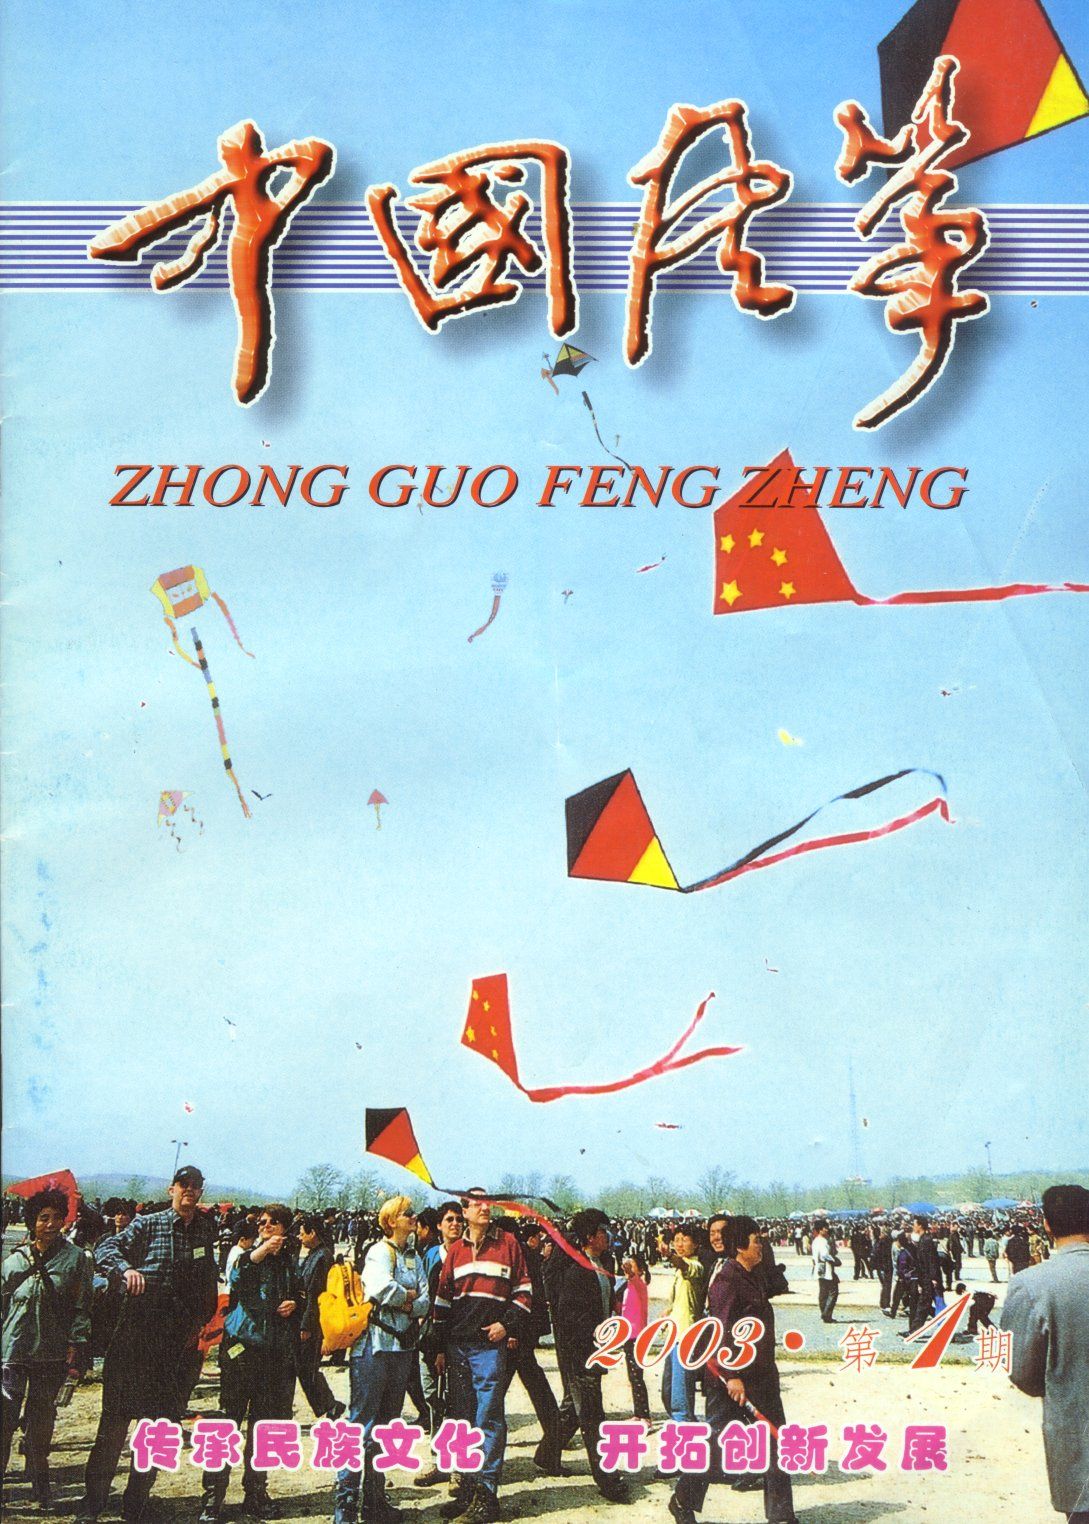 ZhongGuo Fengzheng (Chinese Kites) 2003-1